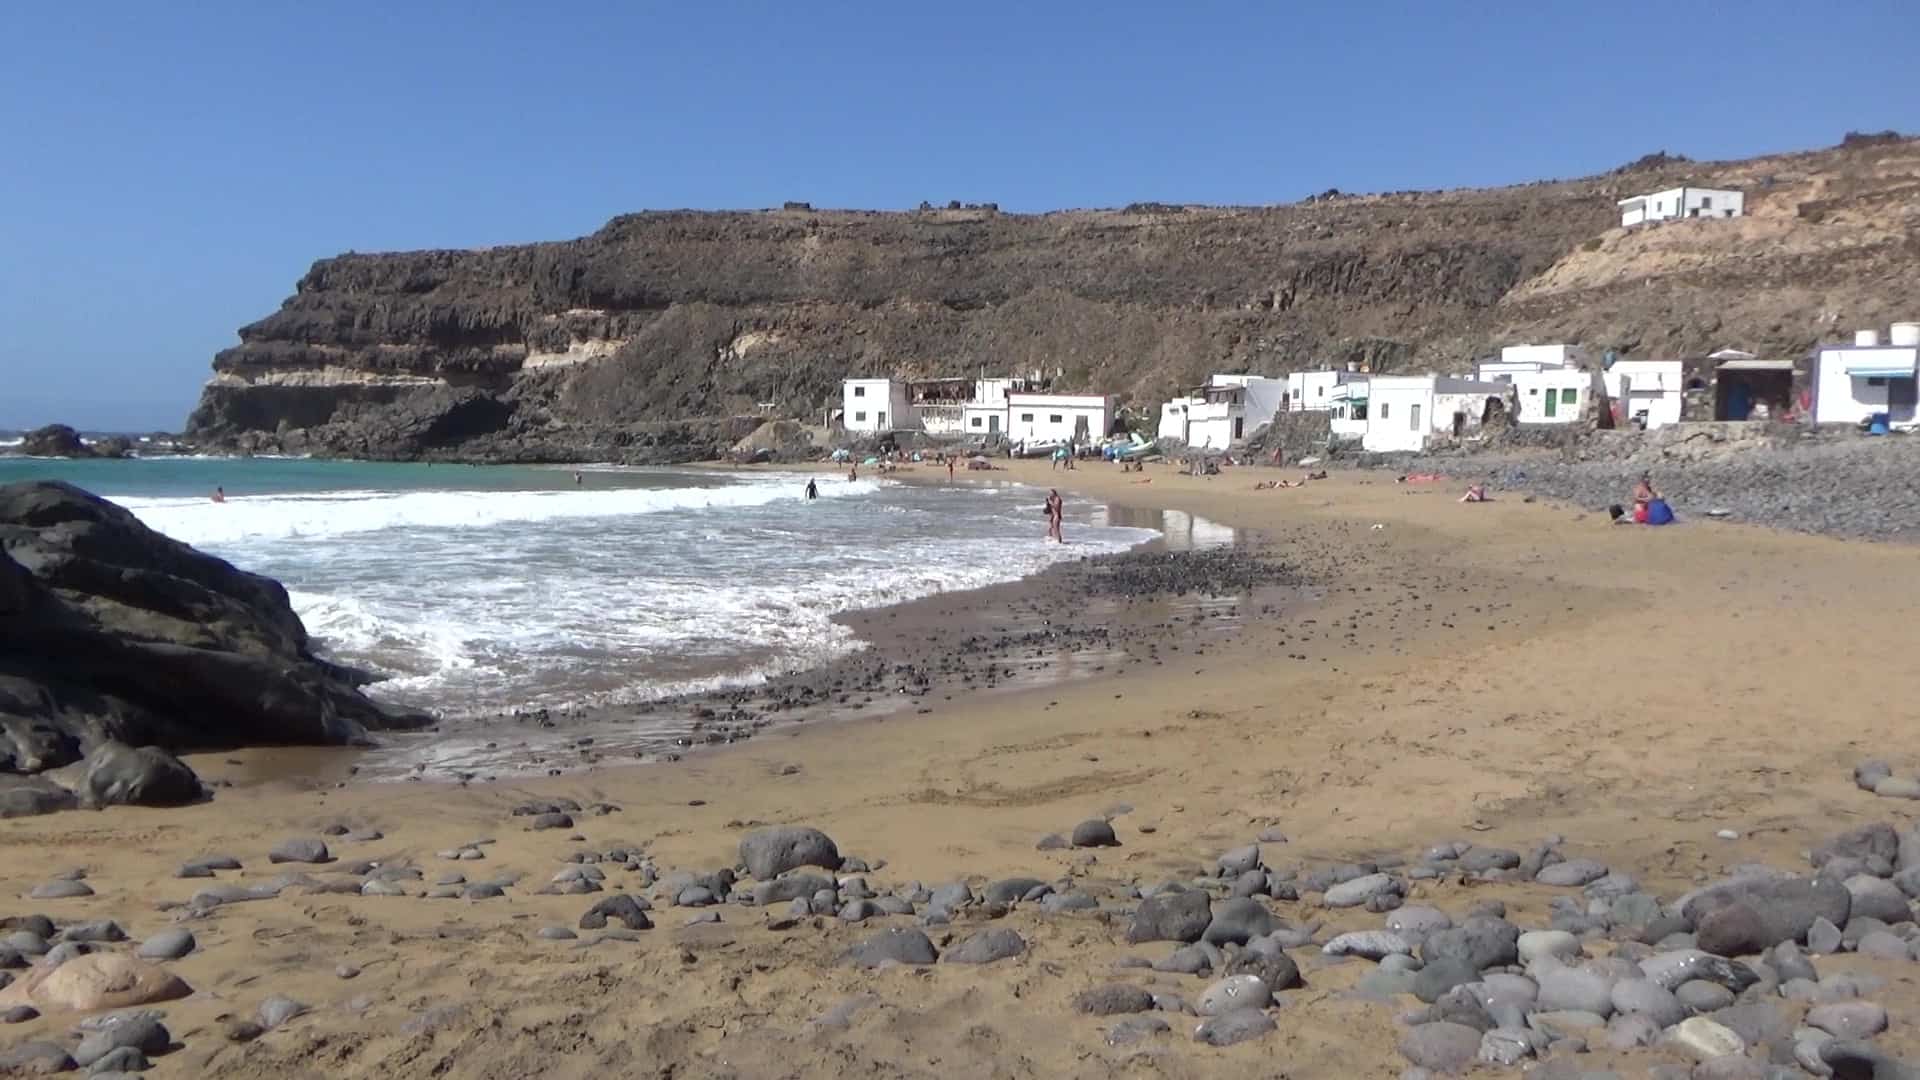 Los Molinos – Where to go in Fuerteventura